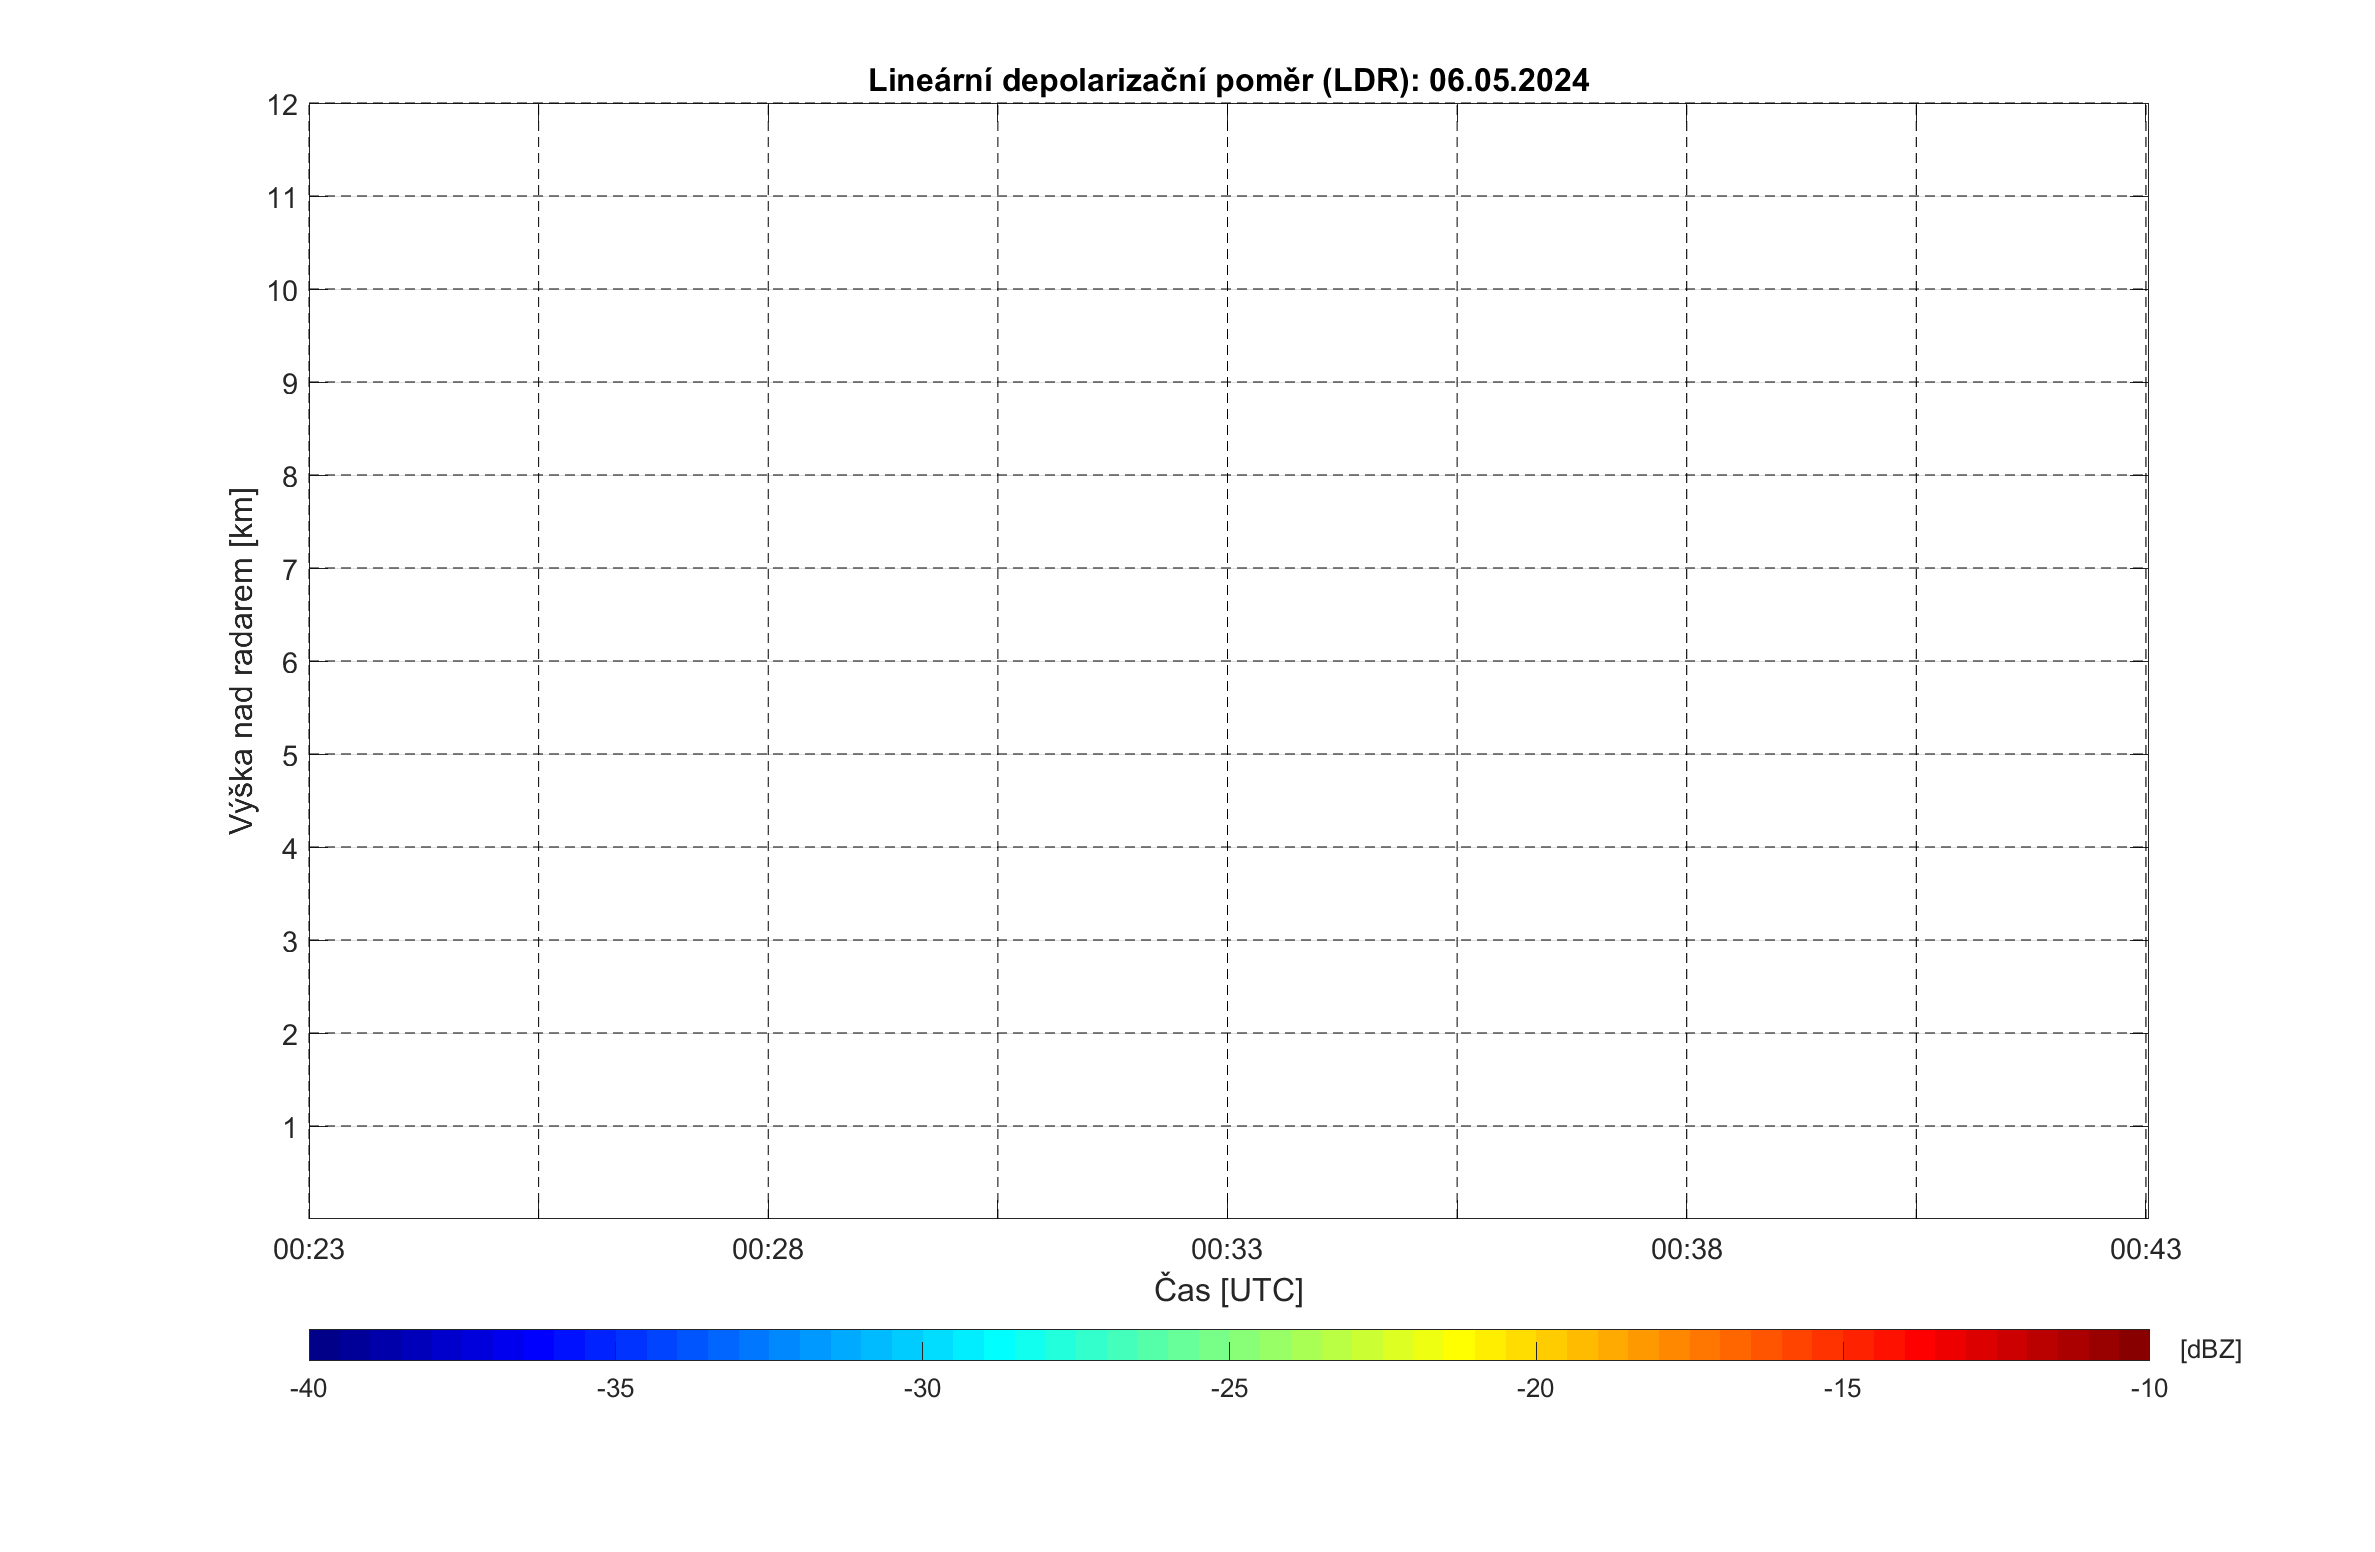 Lineární depolarizační poměr (LDR) – rozlišení typu odrážejících částic, detekuje hladinu tání